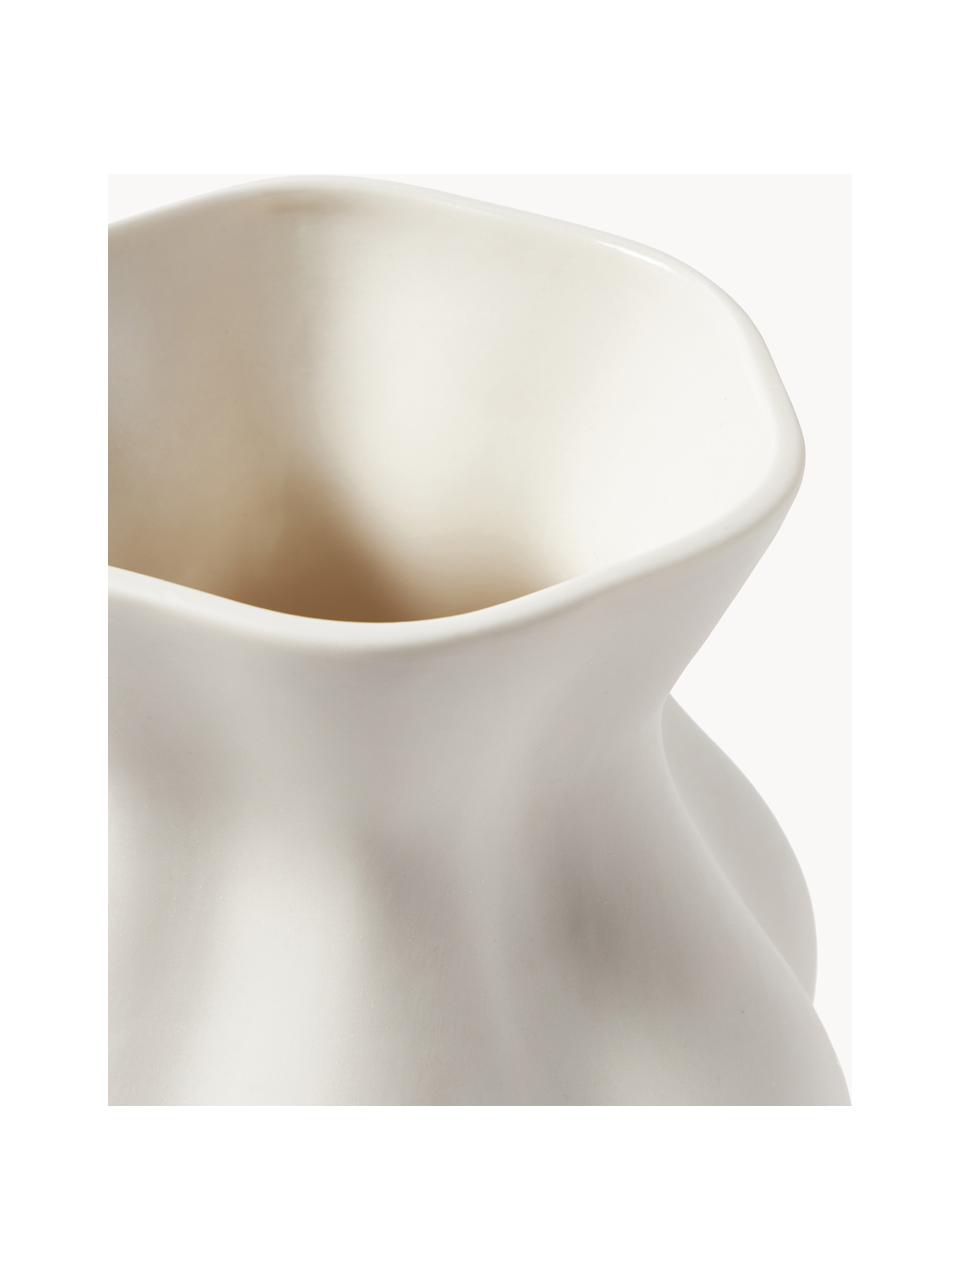 Porzellan-Vase Kiki's Derrier, H 23 cm, Porzellan, Weiss, Ø 19 x H 23 cm